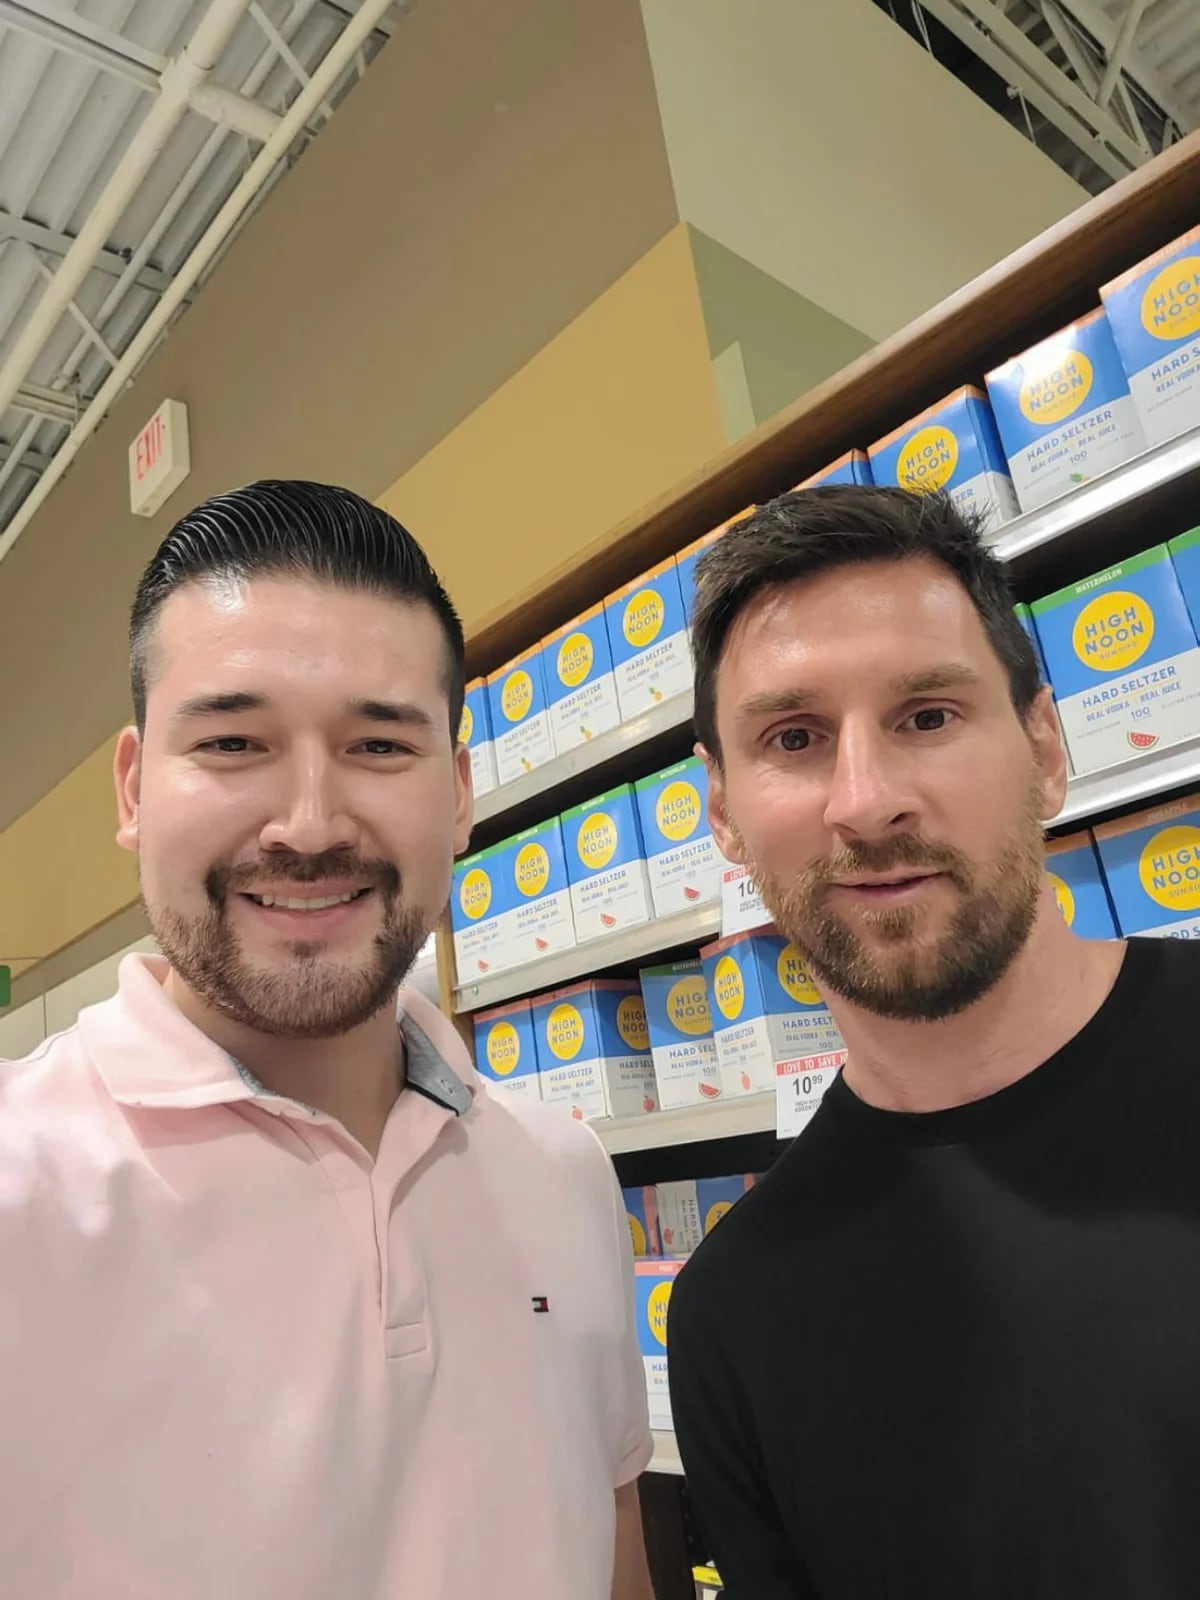 Lionel Messi paseo por Miami con una remera carísima: entérate cuánto  cuesta – GENTE Online